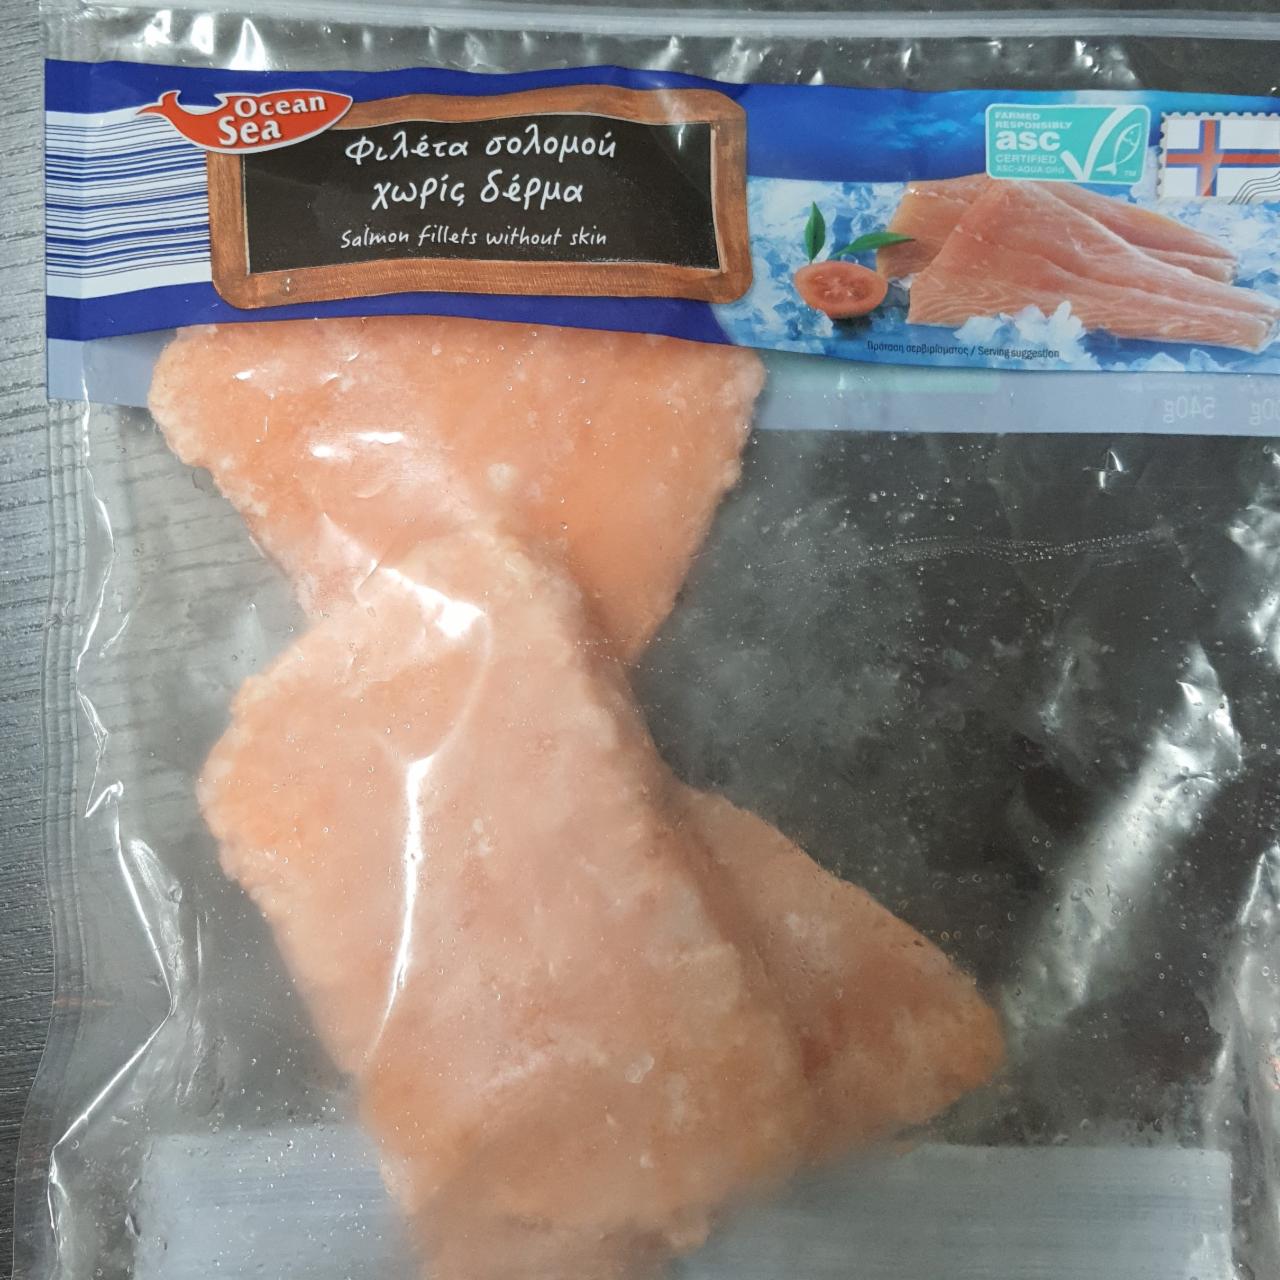 Fotografie - Salmon fillets without skin Ocean sea